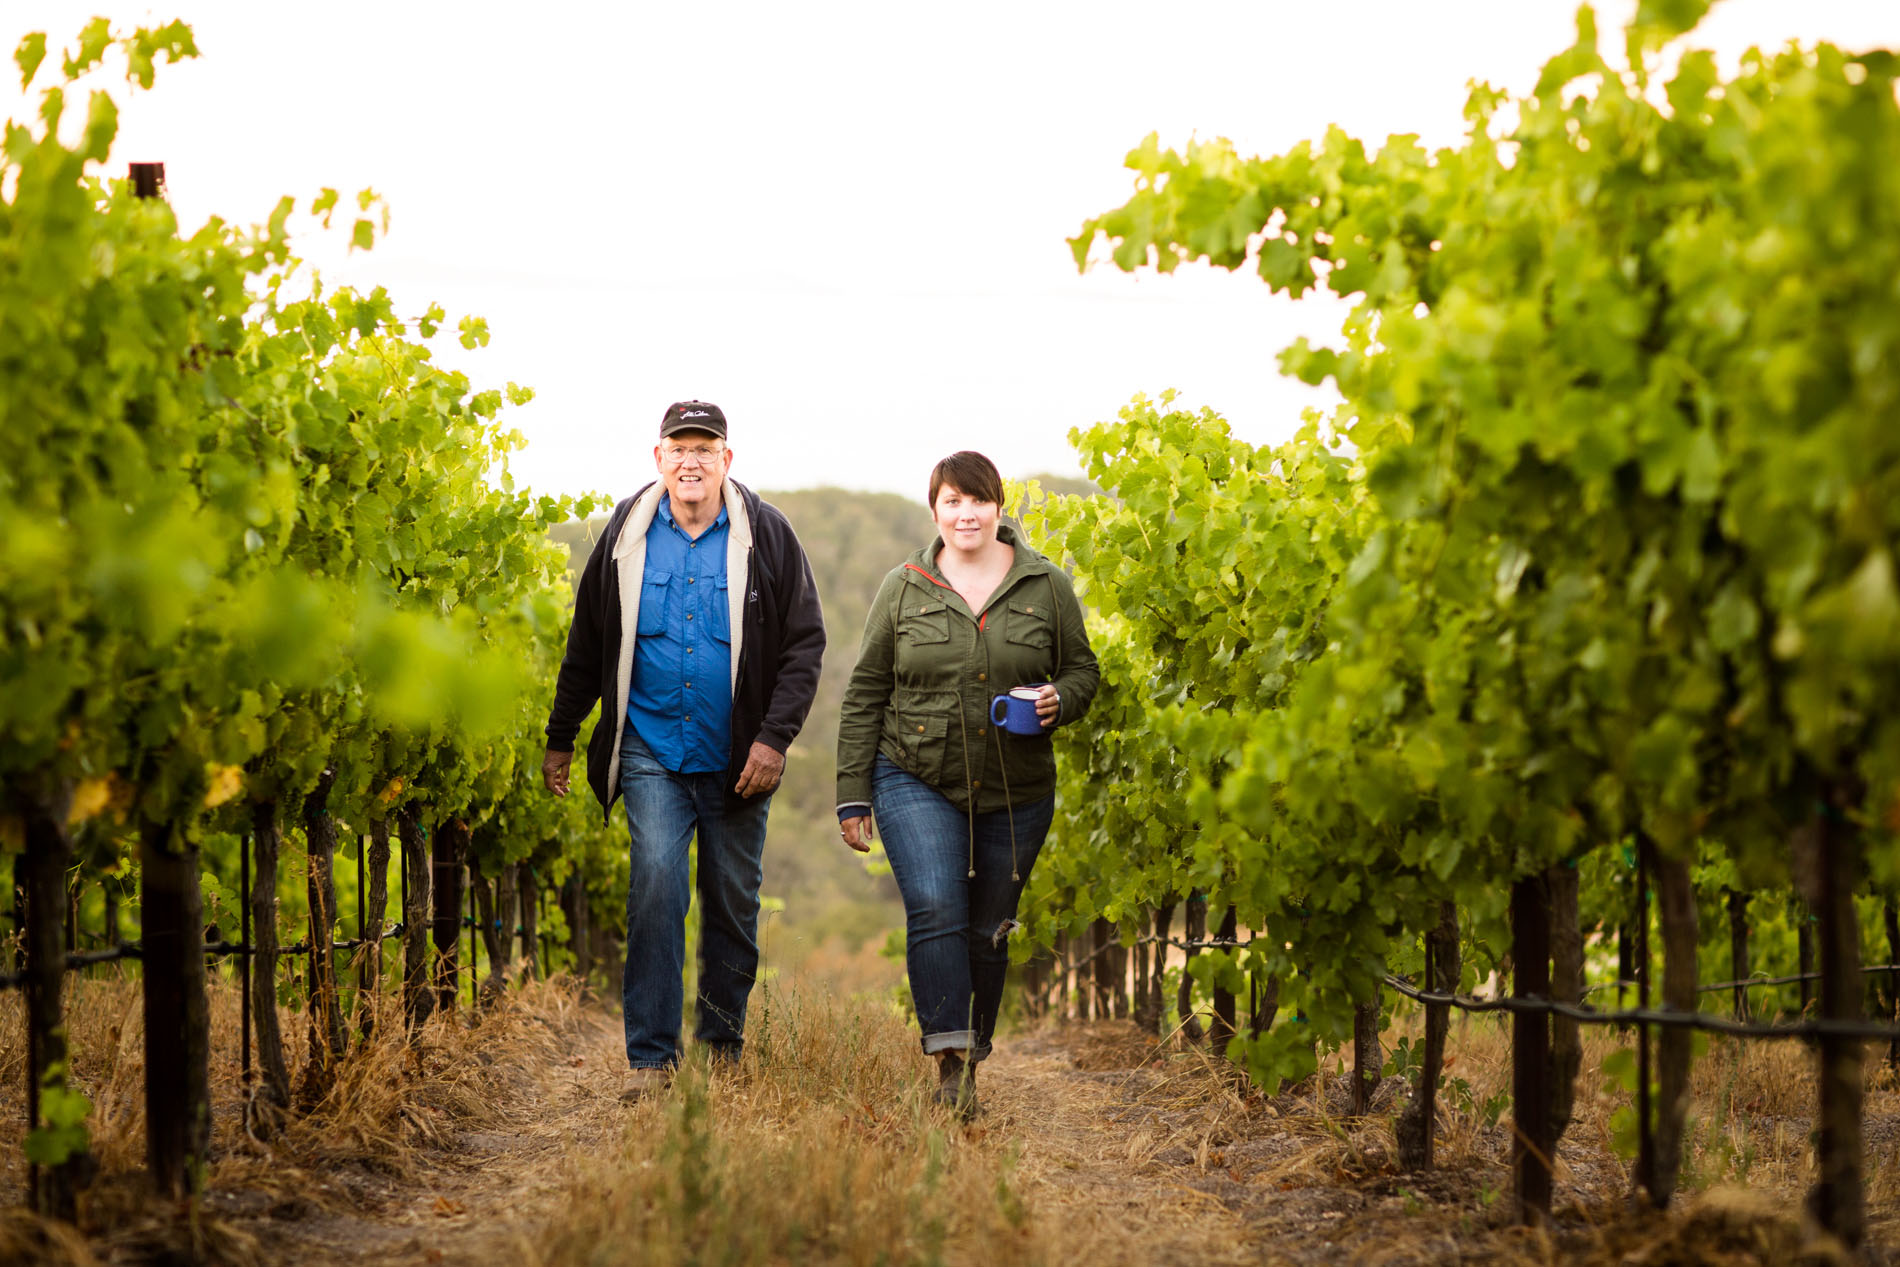 Man and woman walking through the vineyard